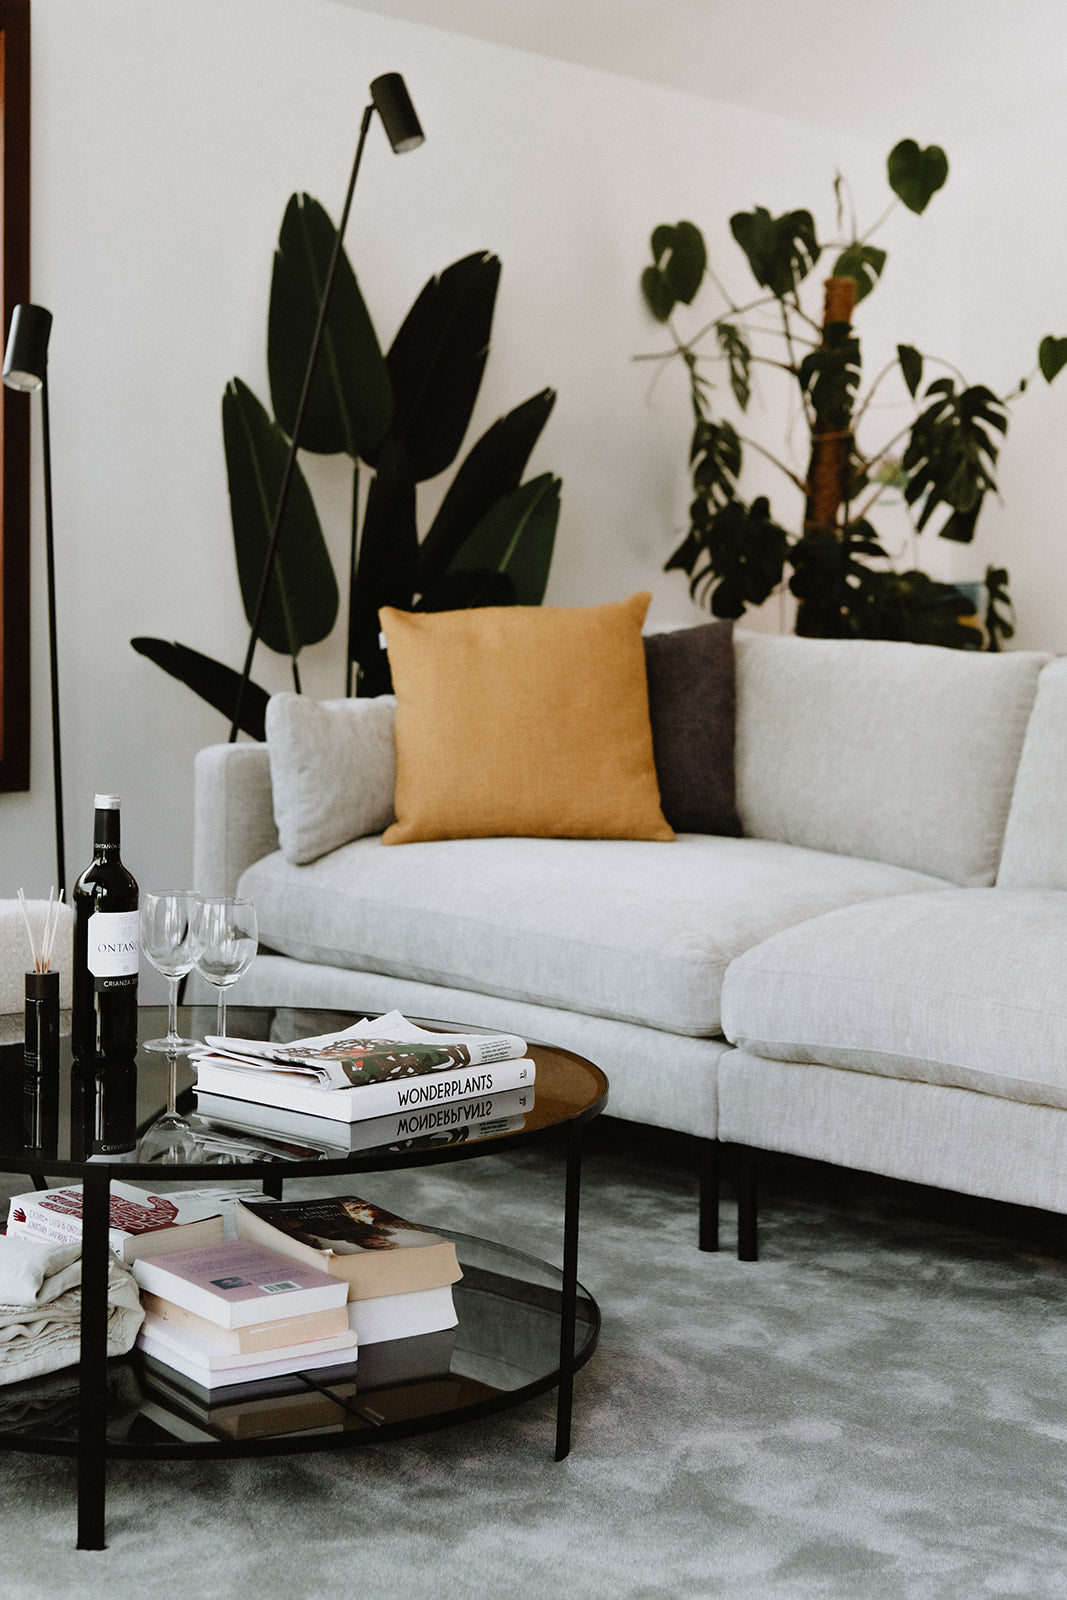 Interieurinspiratie met verschillende objecten zoals planten, bijzettafel, zetel op een zacht grijskleurig duurzaam Maison Forton tapijt.